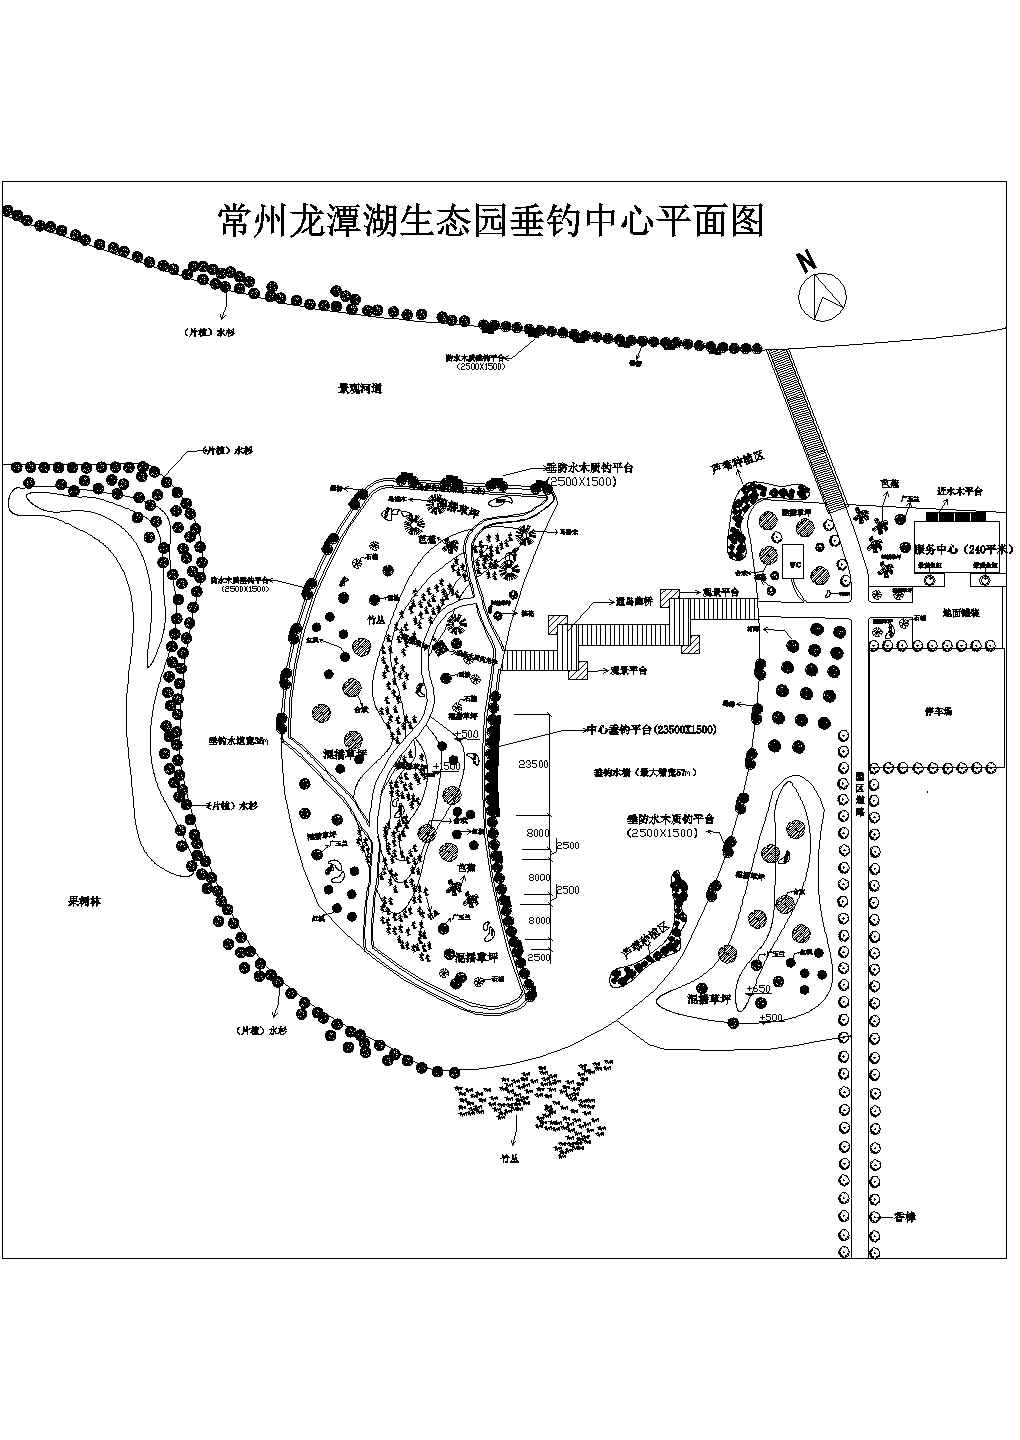 江苏农家乐山庄生态垂钓中心小岛景观规划设计CAD平面布置图